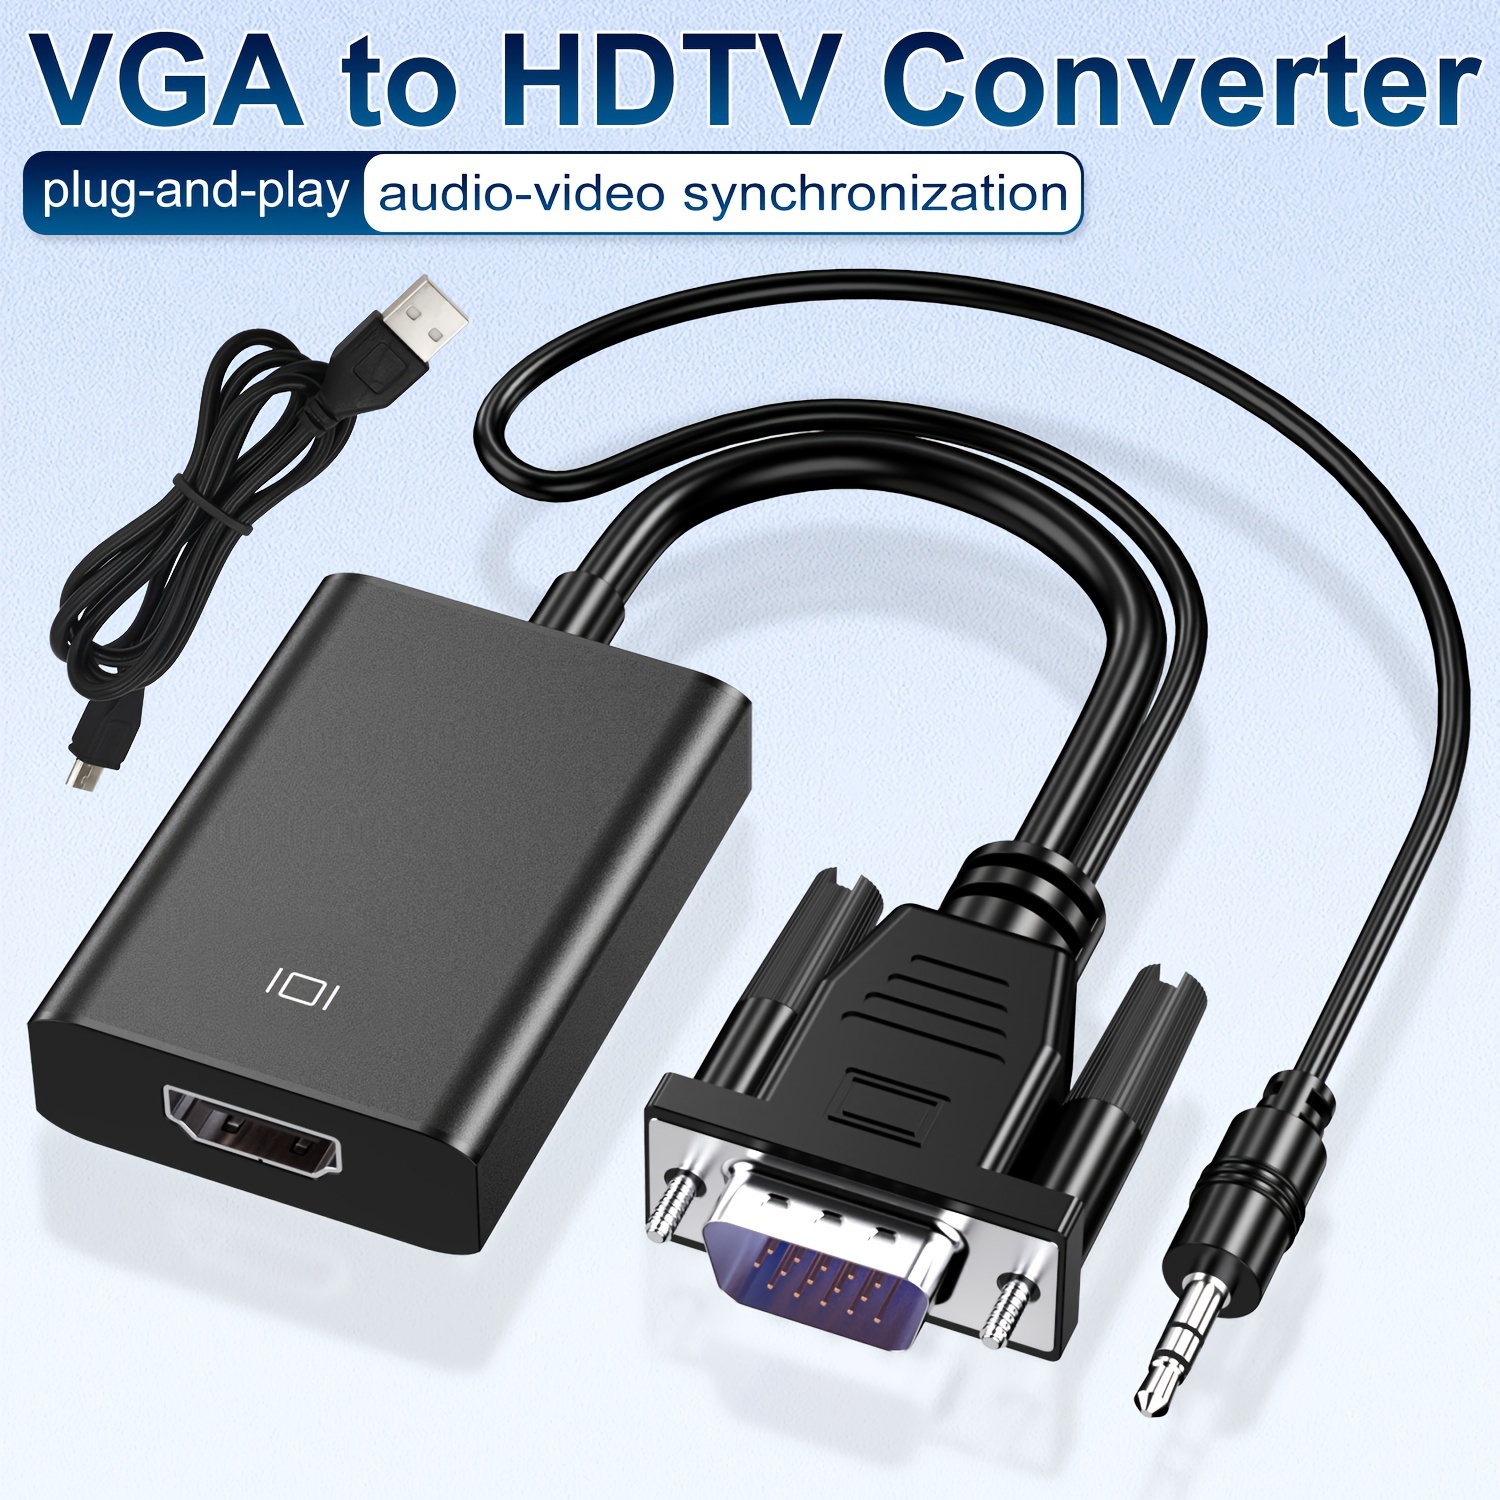 Adaptador VGA a HDMI para conectar computadora portátil con interfaz VGA  tradicional, monitor o proyector de PC a HDMI, convertidor VGA macho a HDMI